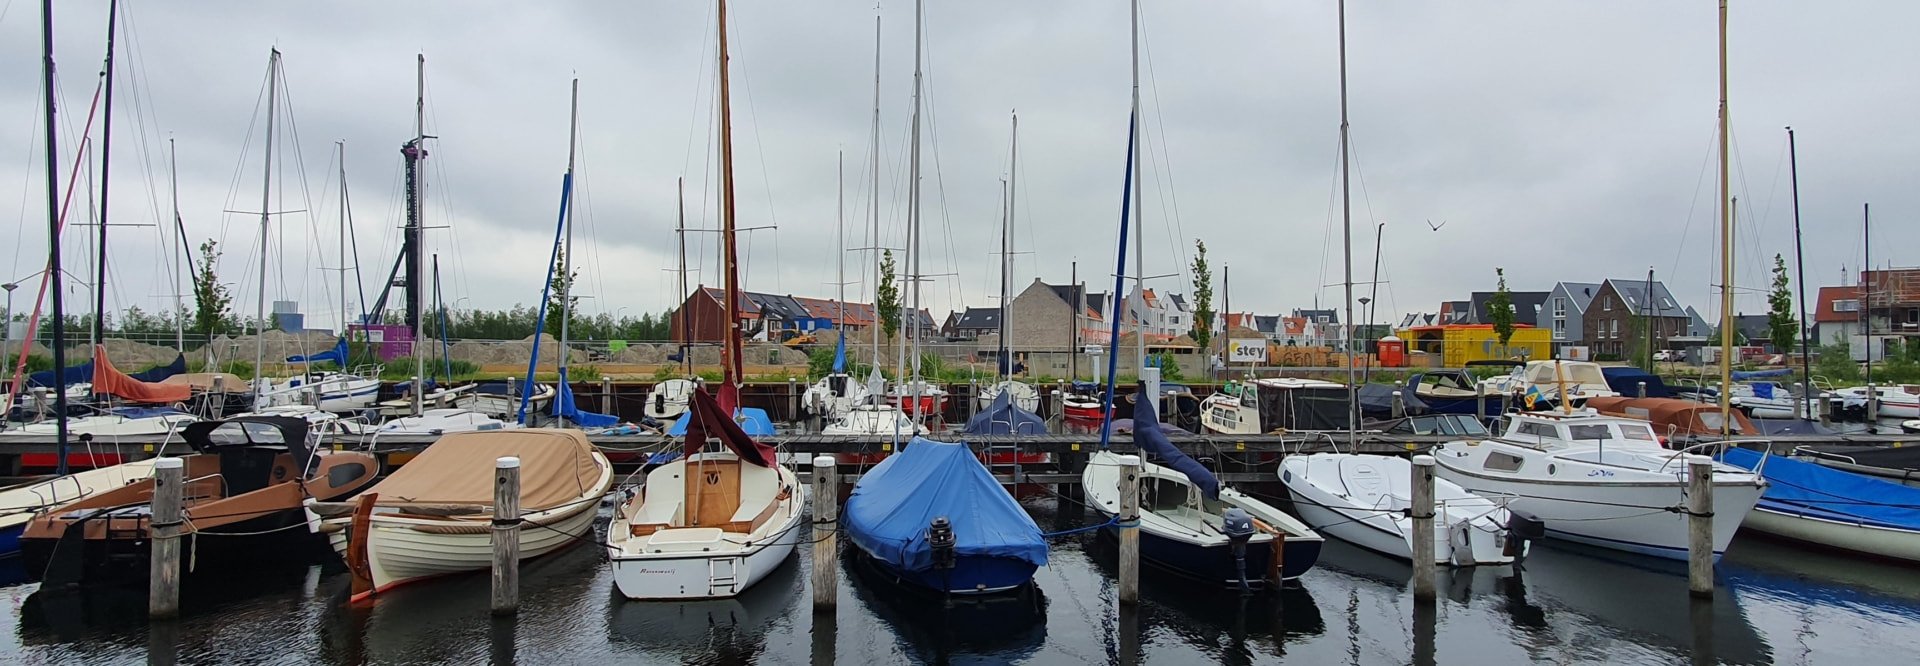 Waterfront gemeente Harderwijk